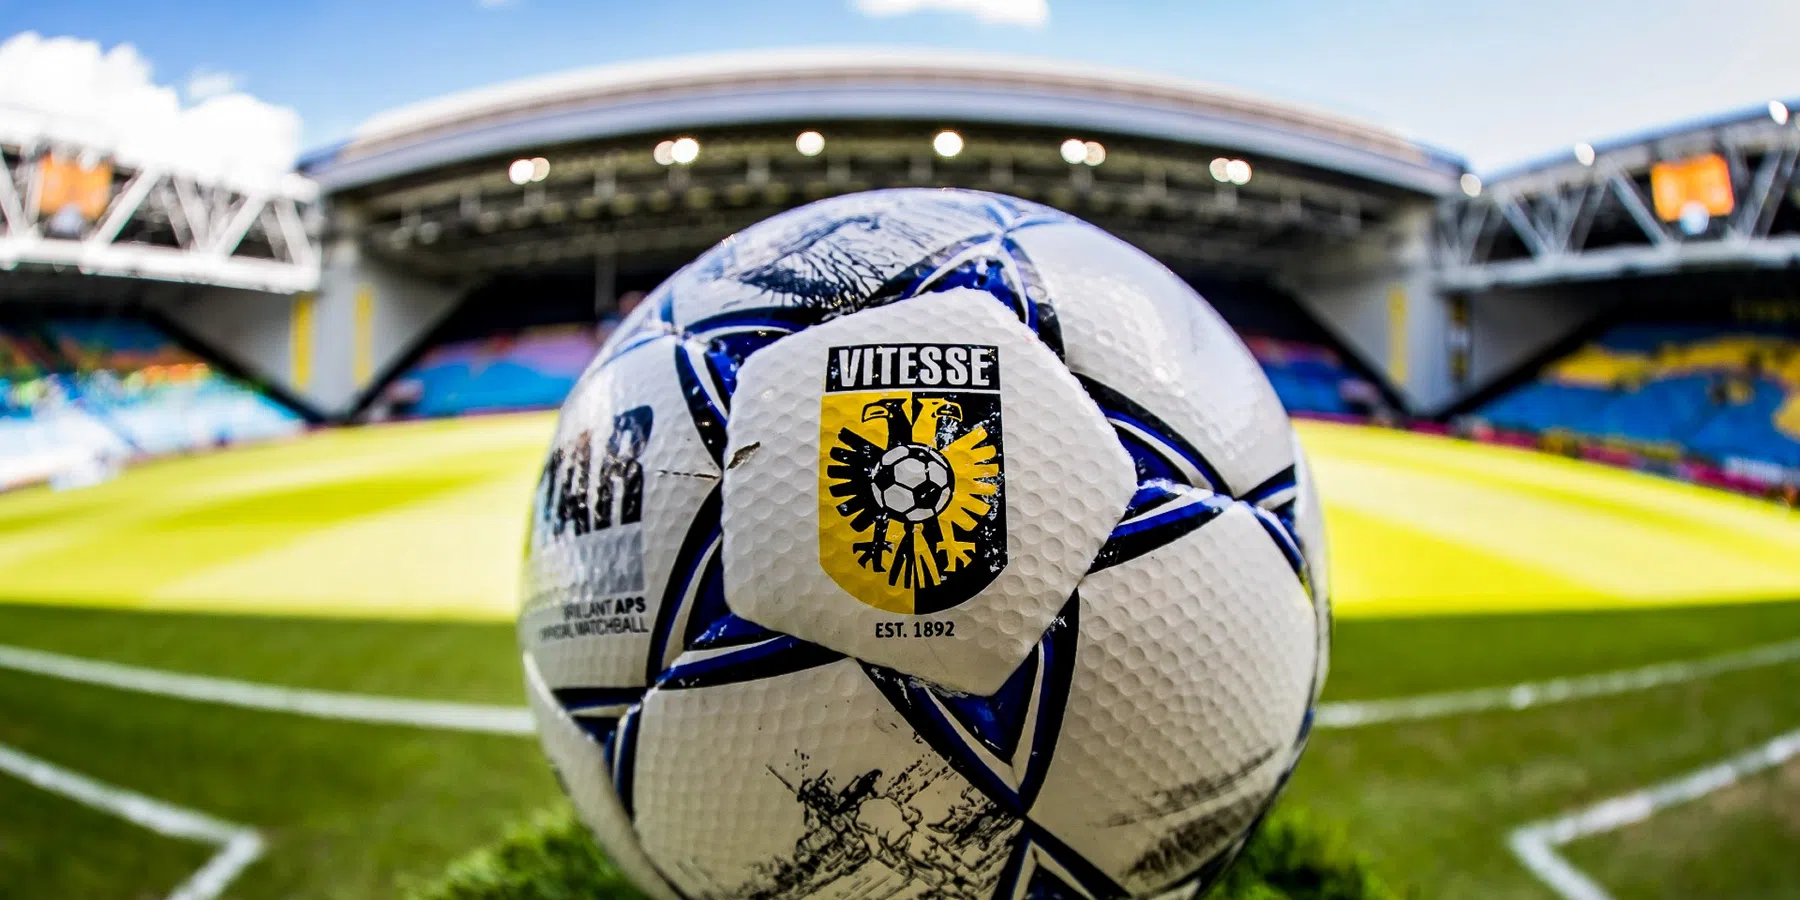 De Gelderlander: overname Vitesse dichterbij door herziening provinciale regels